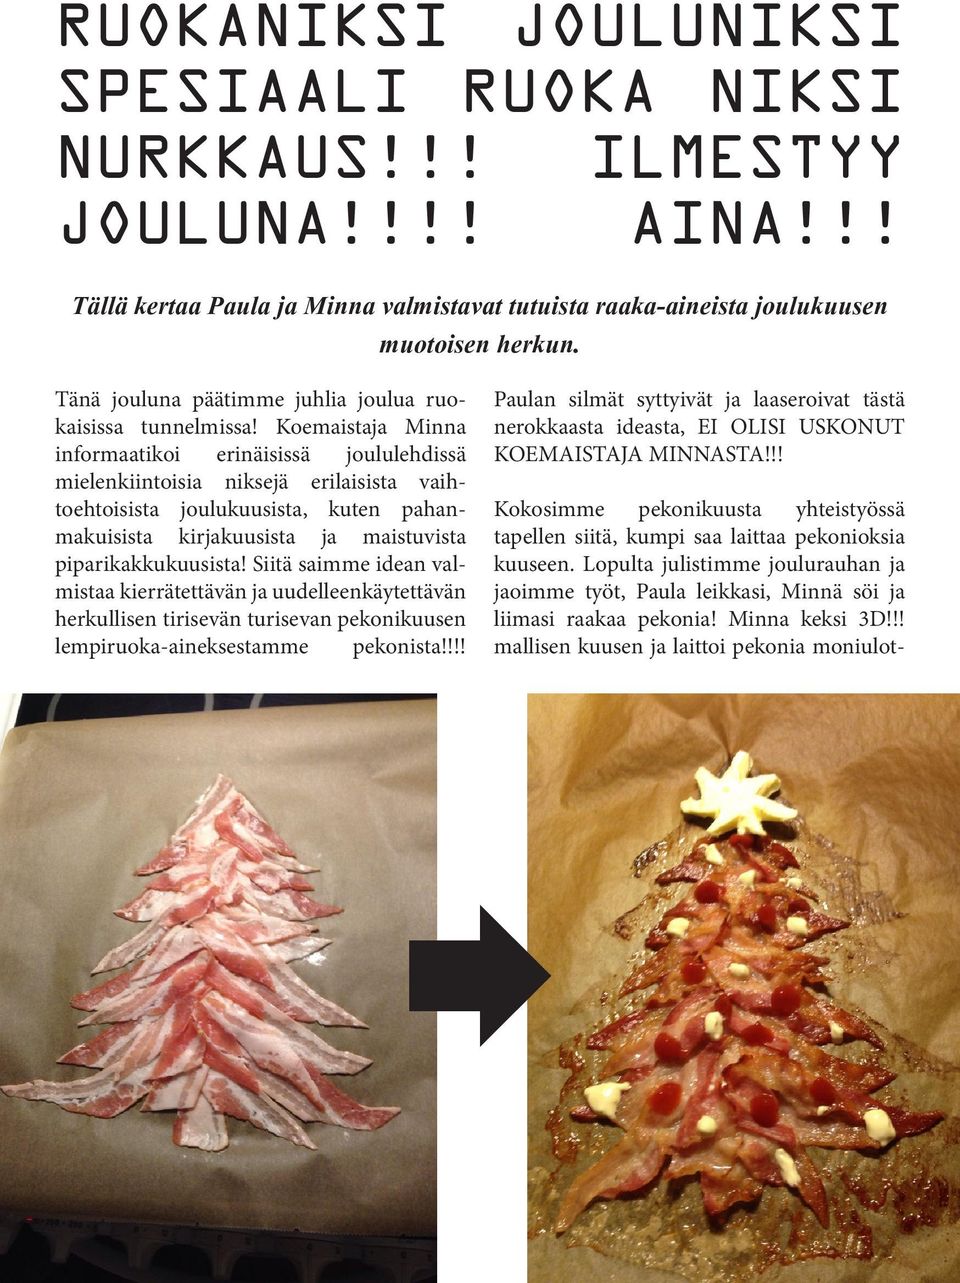 Koemaistaja Minna informaatikoi erinäisissä joululehdissä mielenkiintoisia niksejä erilaisista vaihtoehtoisista joulukuusista, kuten pahanmakuisista kirjakuusista ja maistuvista piparikakkukuusista!